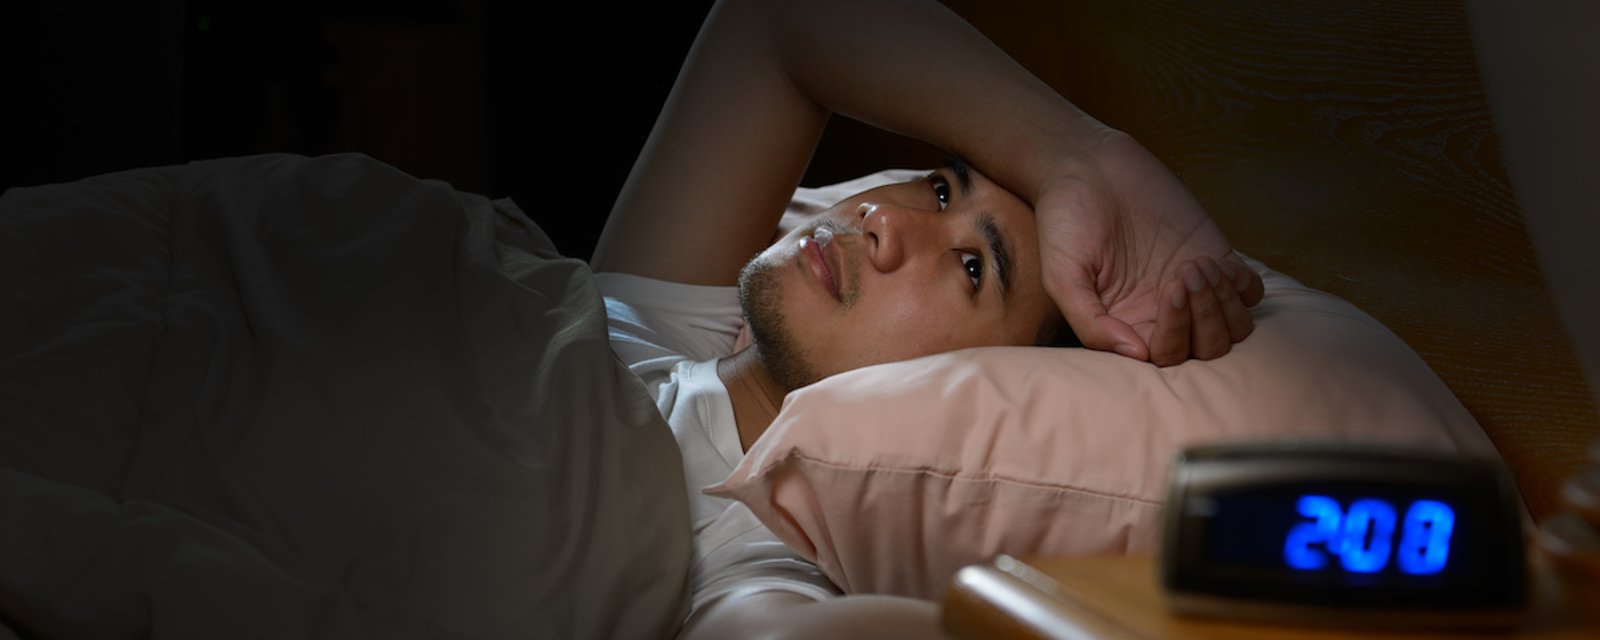 Avoir un collègue désagréable peut affecter votre sommeil